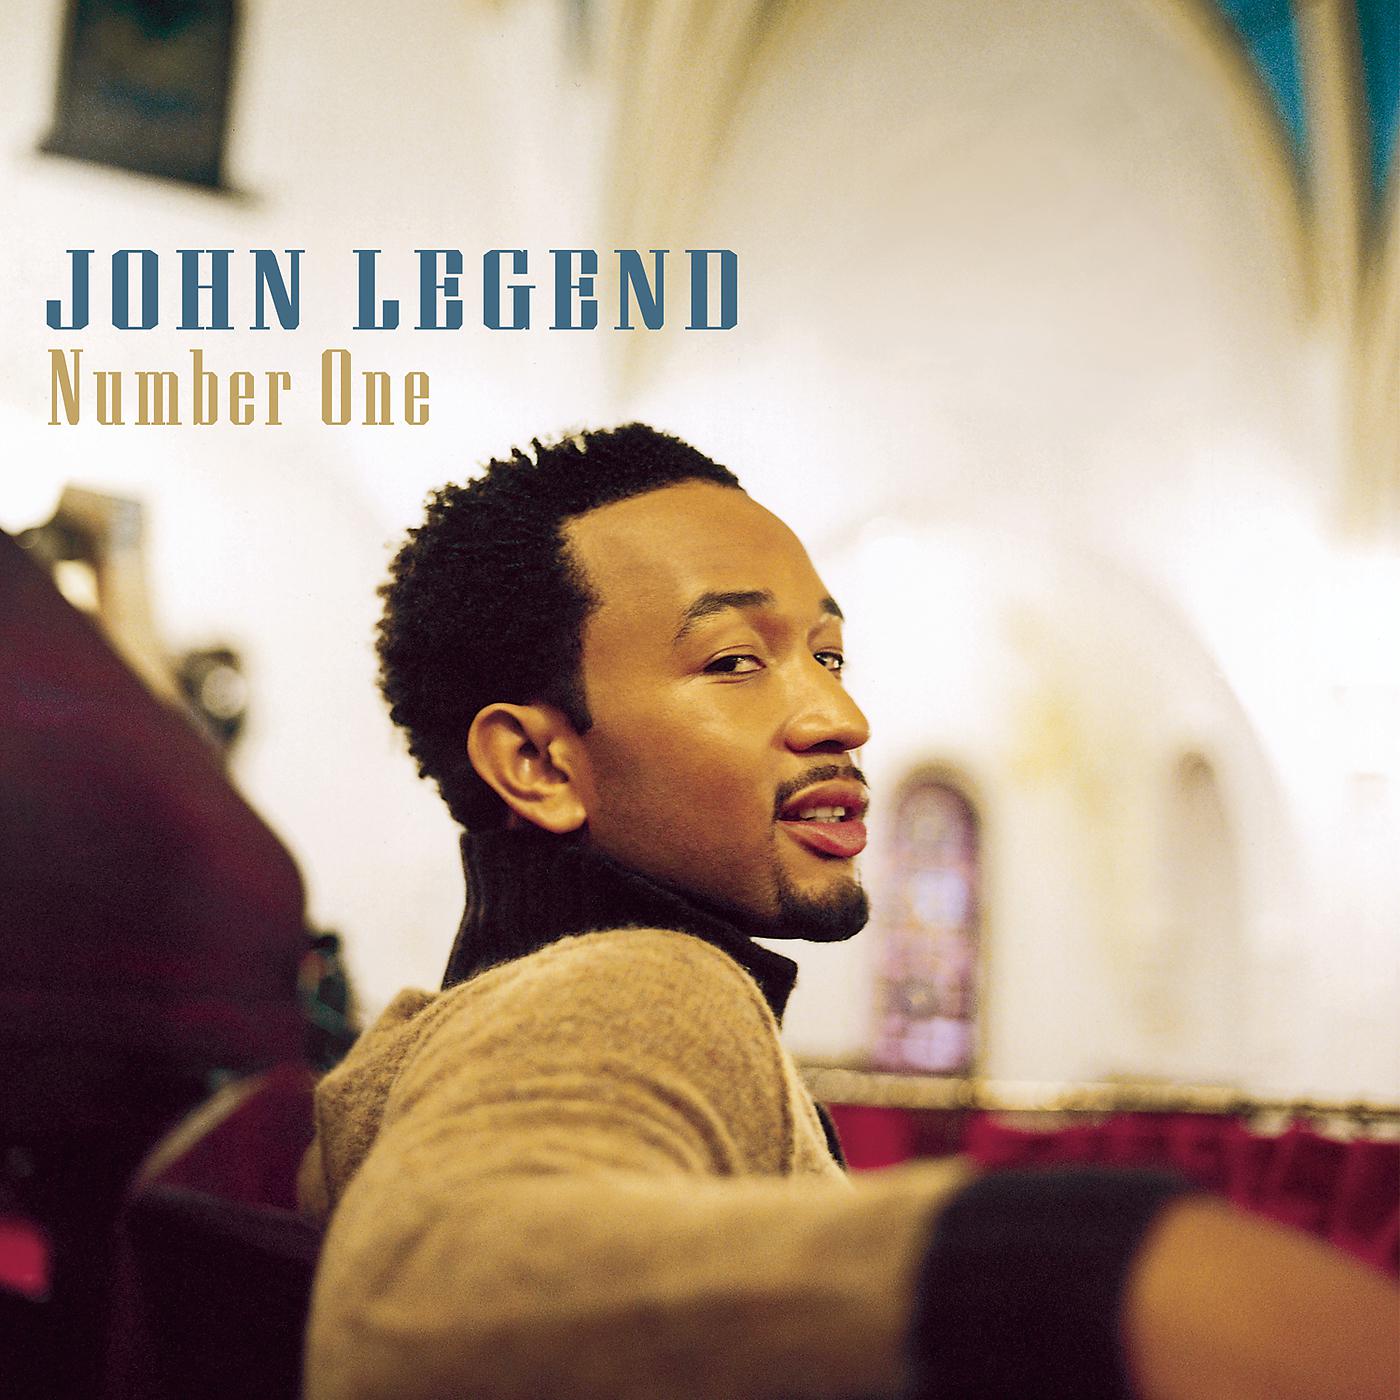 Number one песня. Legend John "get Lifted". Legend John "Evolver". John Legend feat Kanye West. John Legend never Break.